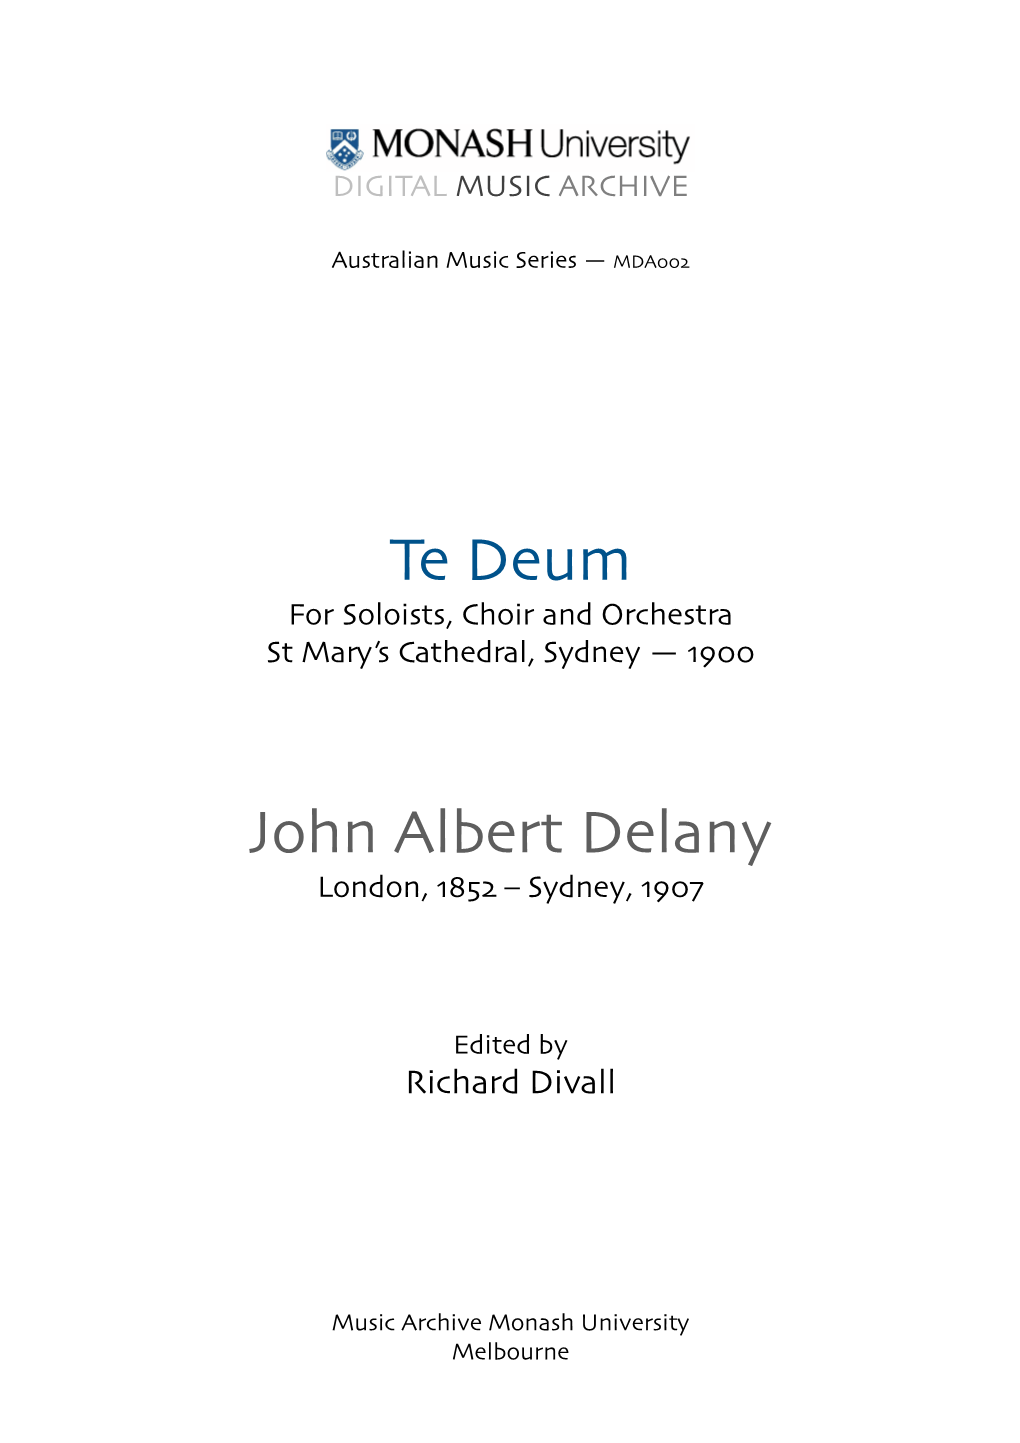 Te Deum! John Albert Delany!